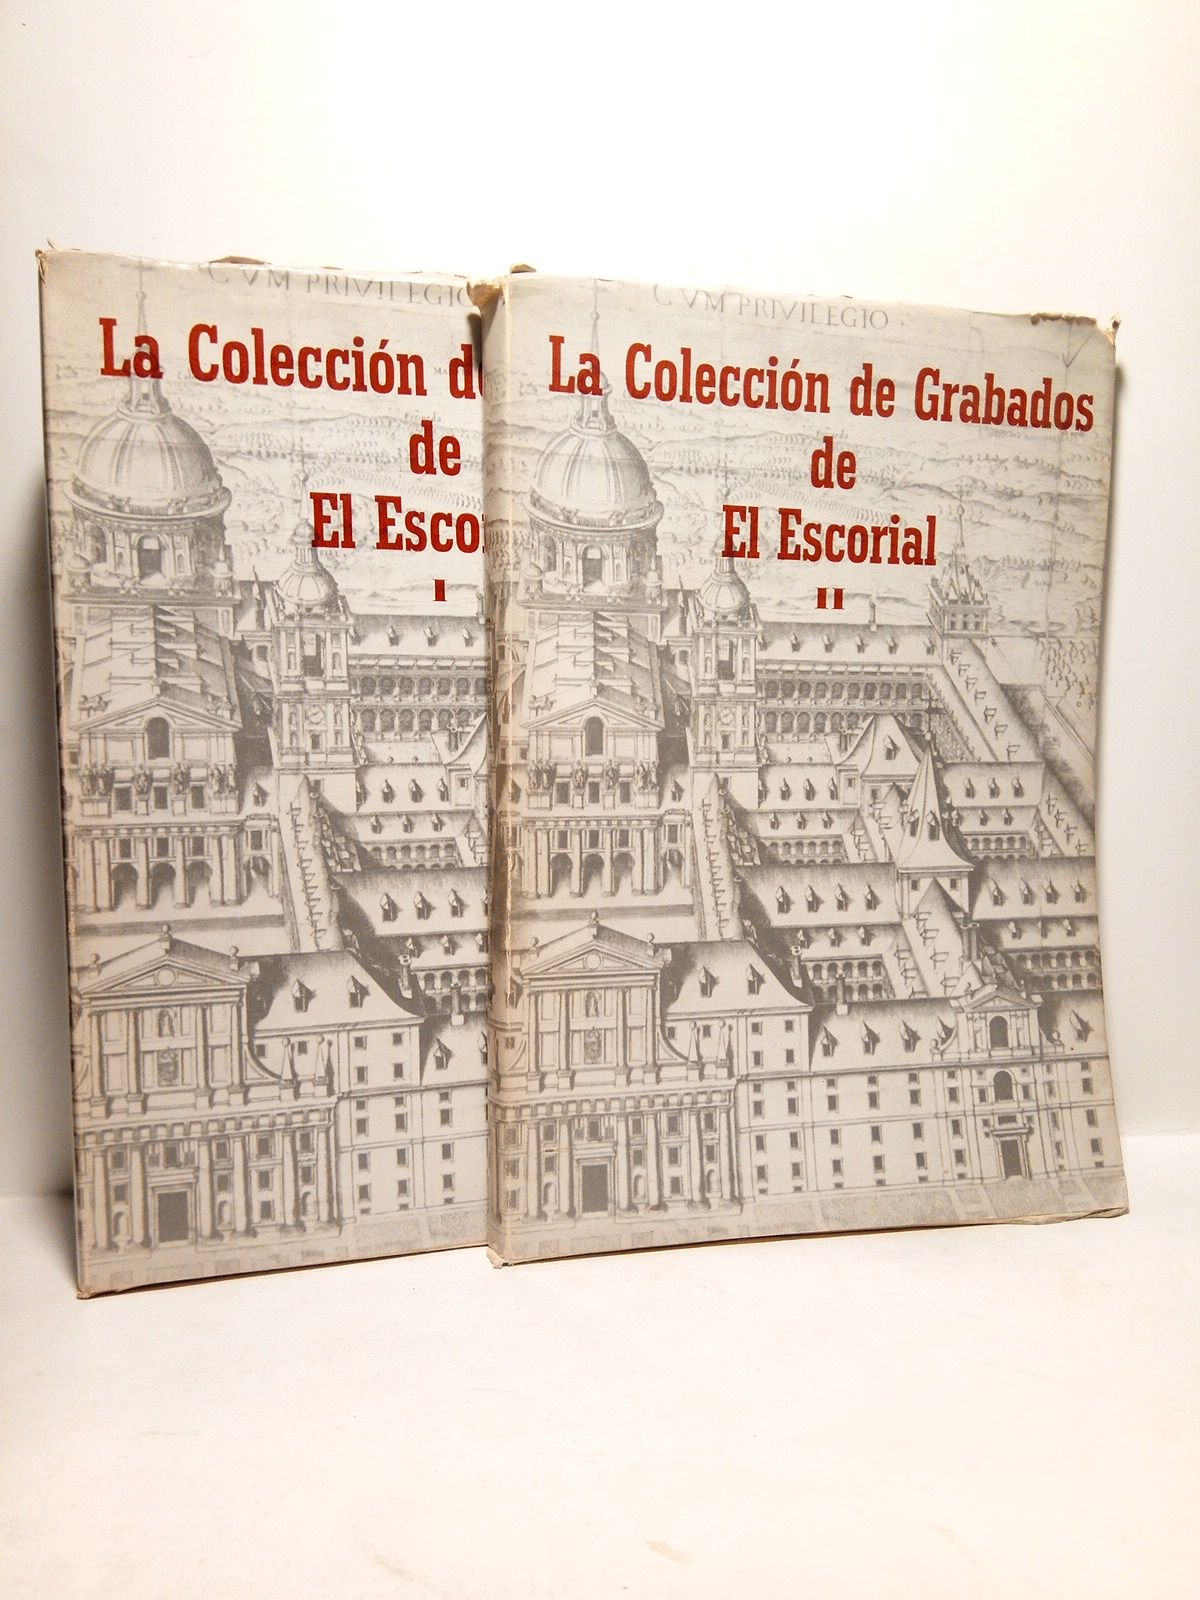 AINAUD DE LASARTE, Juan y Aurora Casanovas - Catlogo de la Coleccin de Grabados de la Biblioteca de El Escorial / Introduccin por..., catlogo por... respectivamente